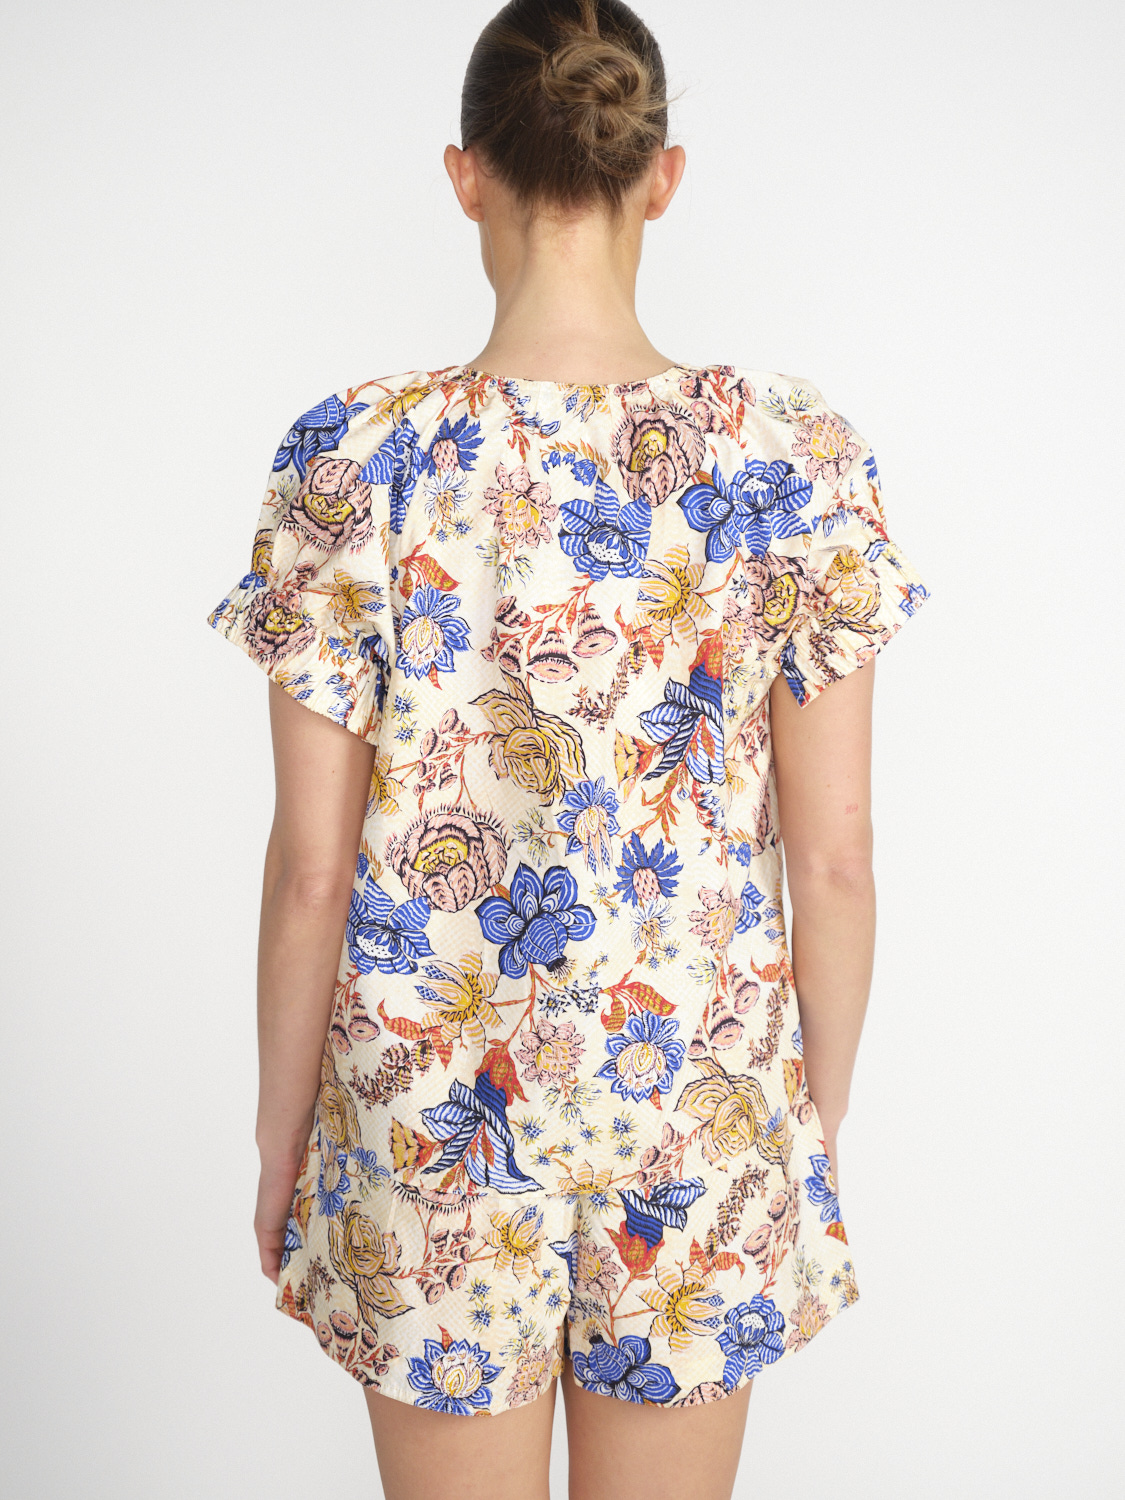 Ulla Johnson Naomi - Camicetta in cotone con disegno floreale   multicolore 34